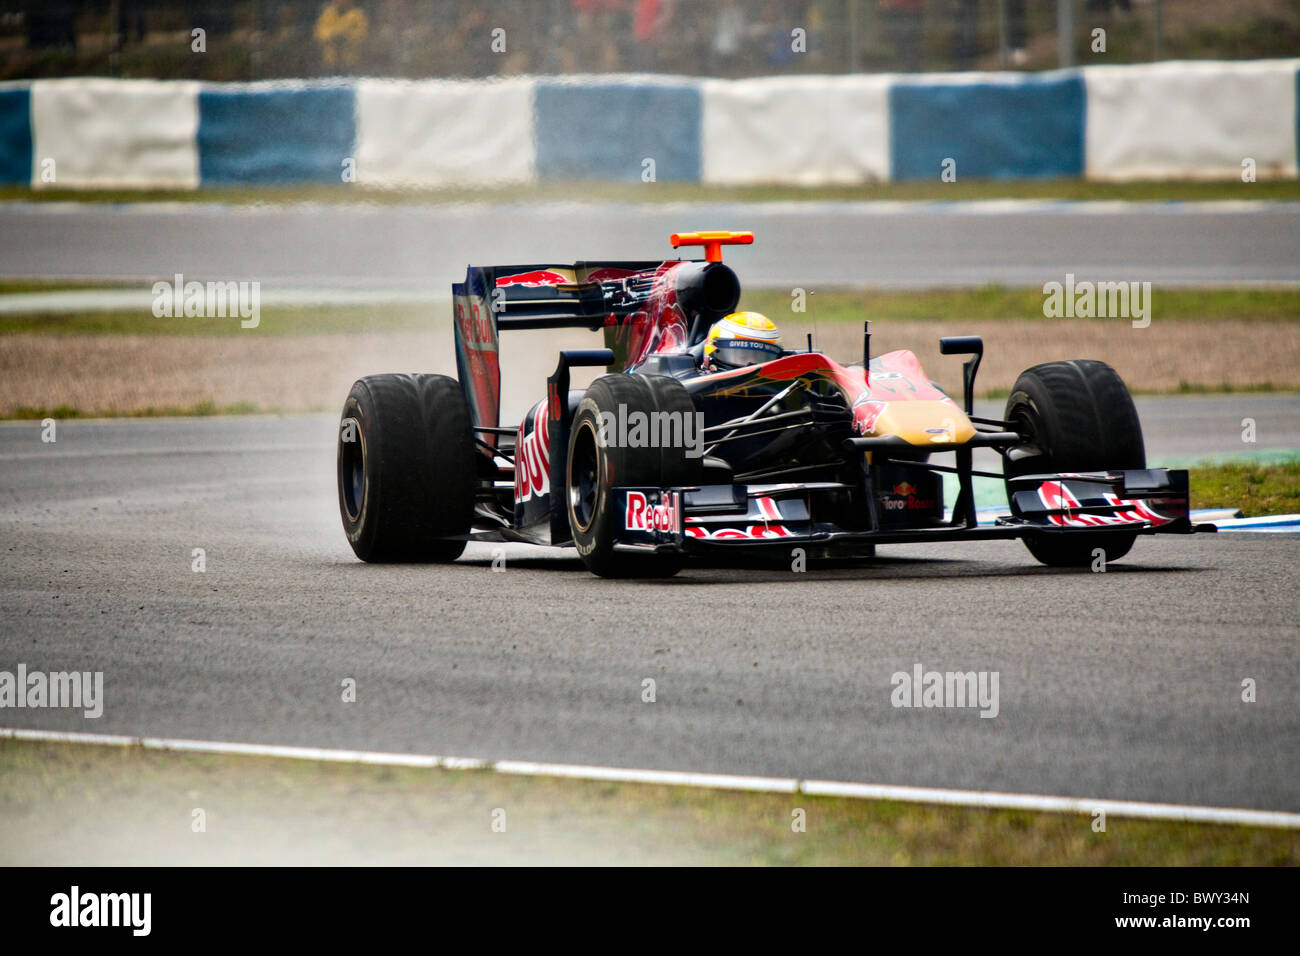 Formel 1 Jerez Sébastien Buemi Test Toro Rosso Auto Ferrari Automobil nassen Meisterschaft Chassis Schaltung Wettbewerb Antrieb f1 Stockfoto